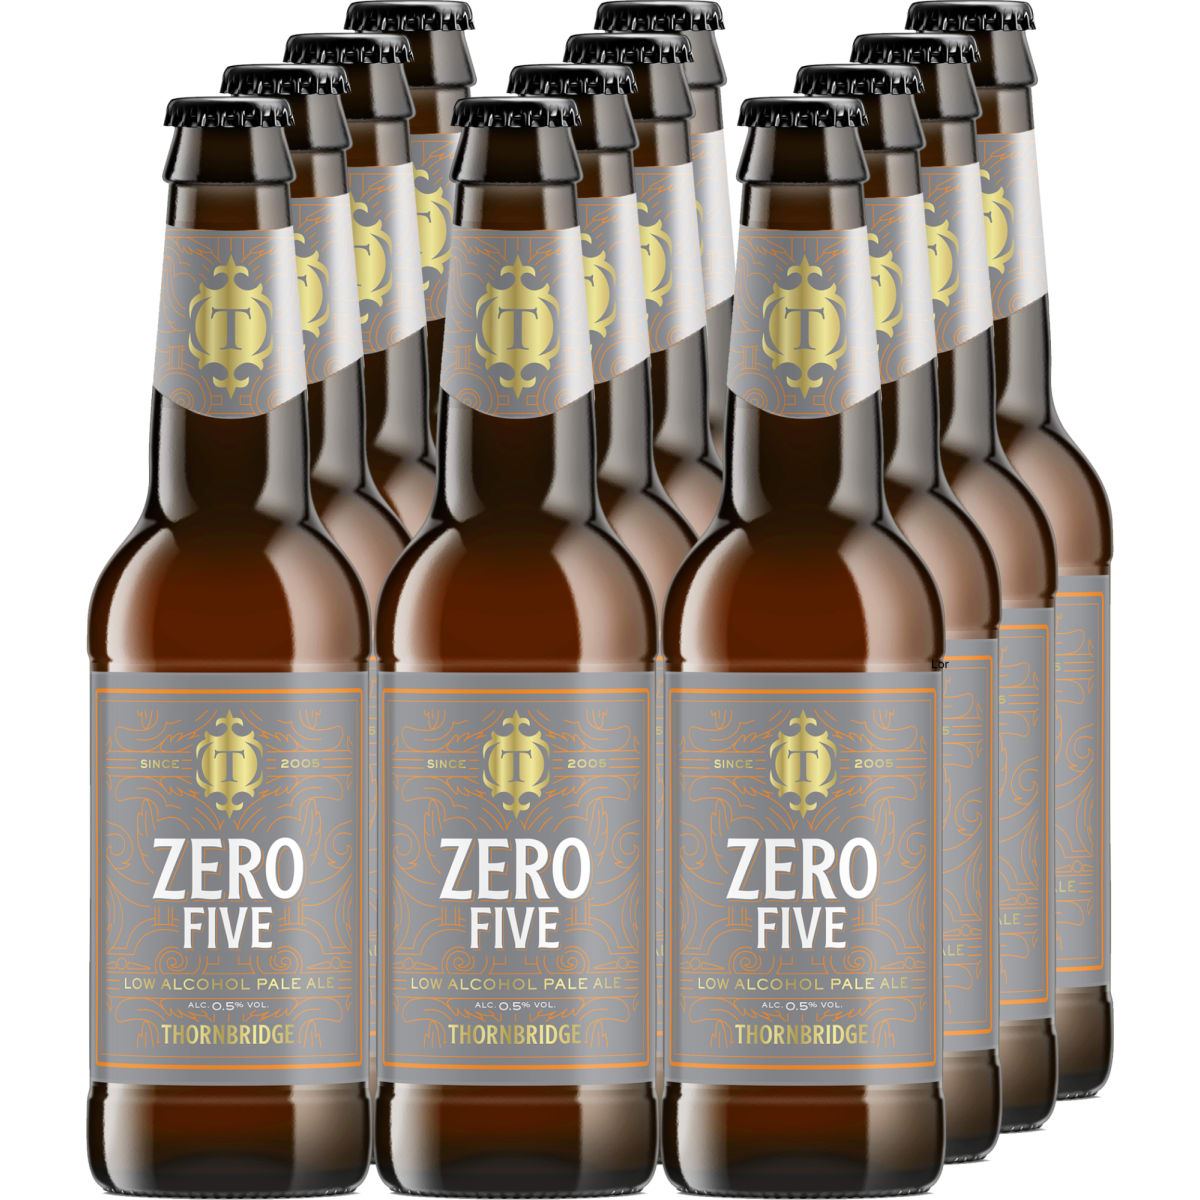 Thornbridge Zero Five 12x33cl alkoholiton olut  verkkokauppa